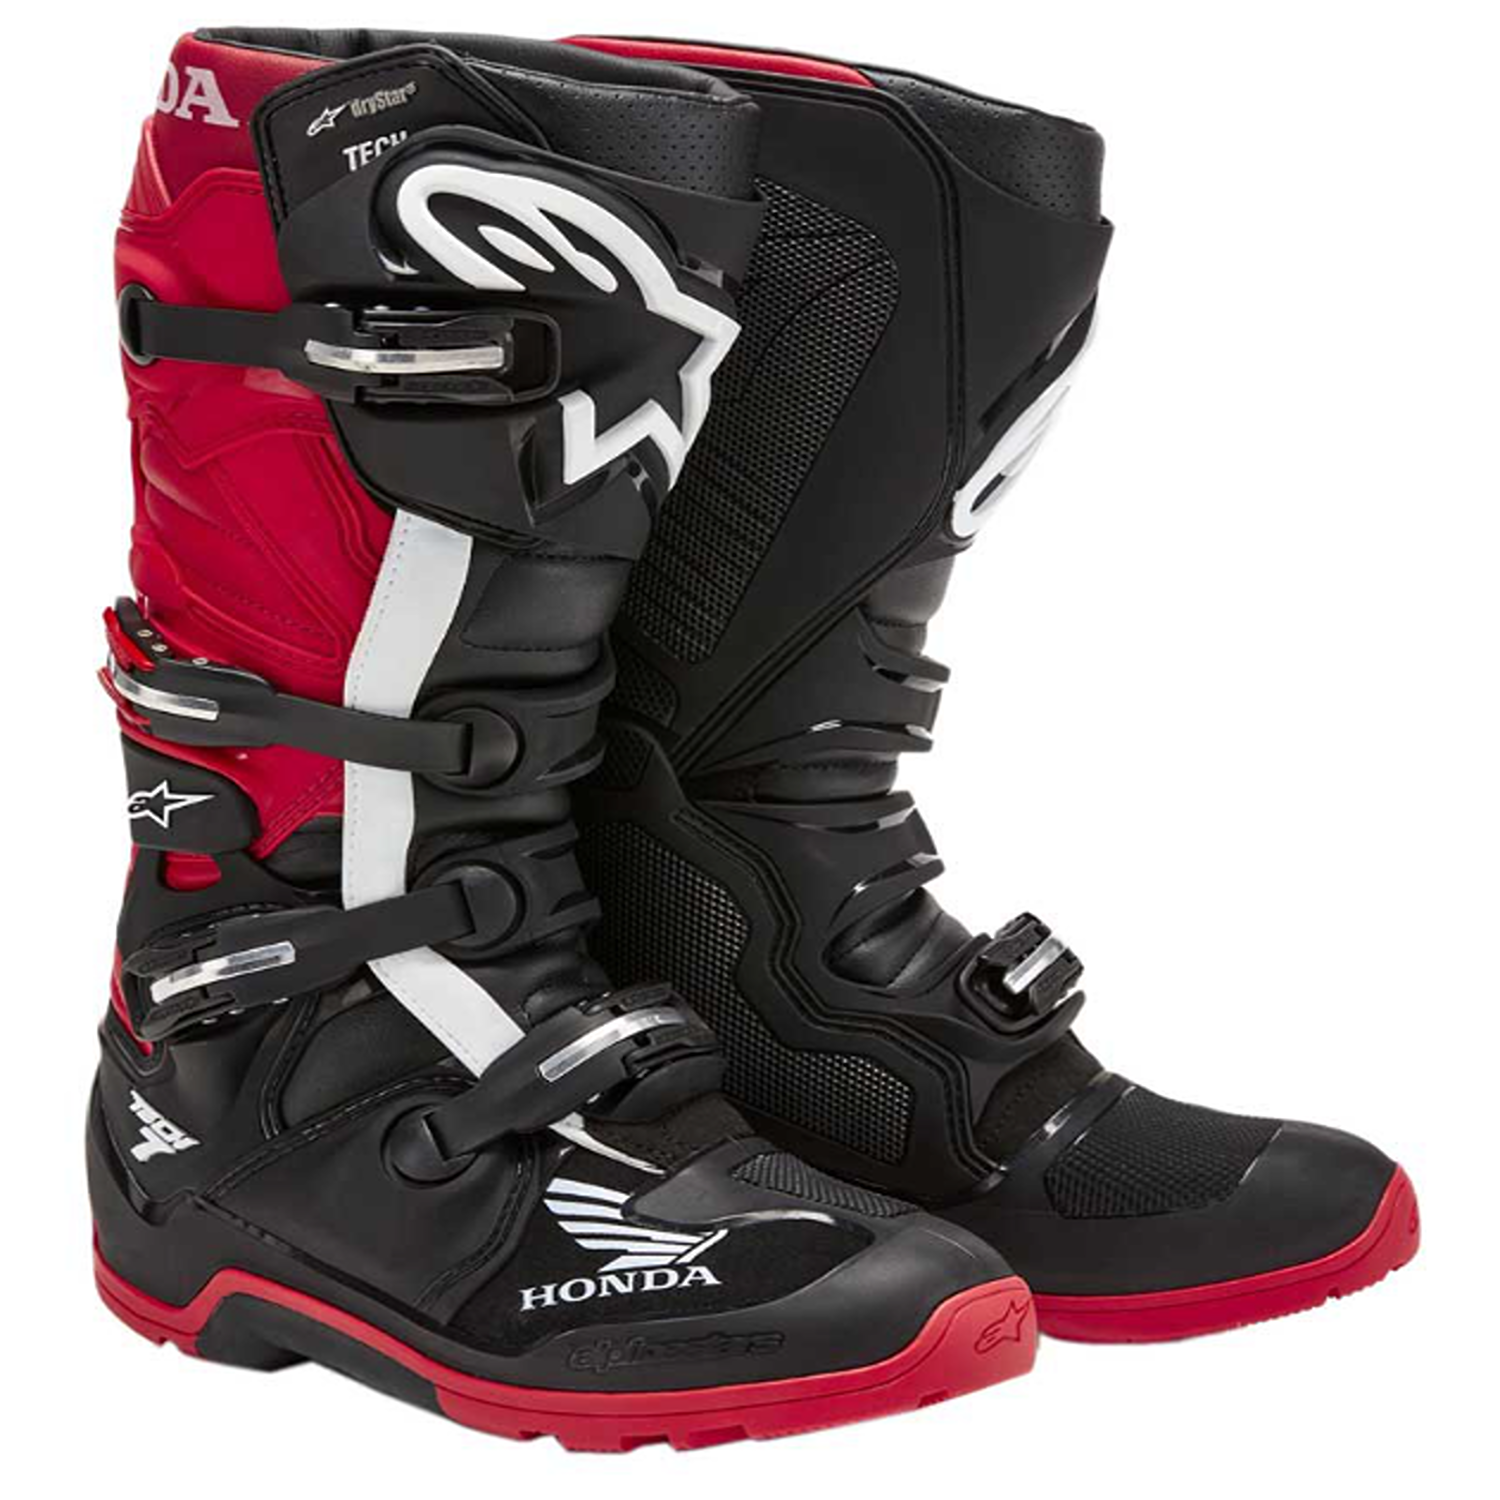 Image of Alpinestars Honda Tech 7 Enduro Drystar Boots Black Bright Red Talla US 6